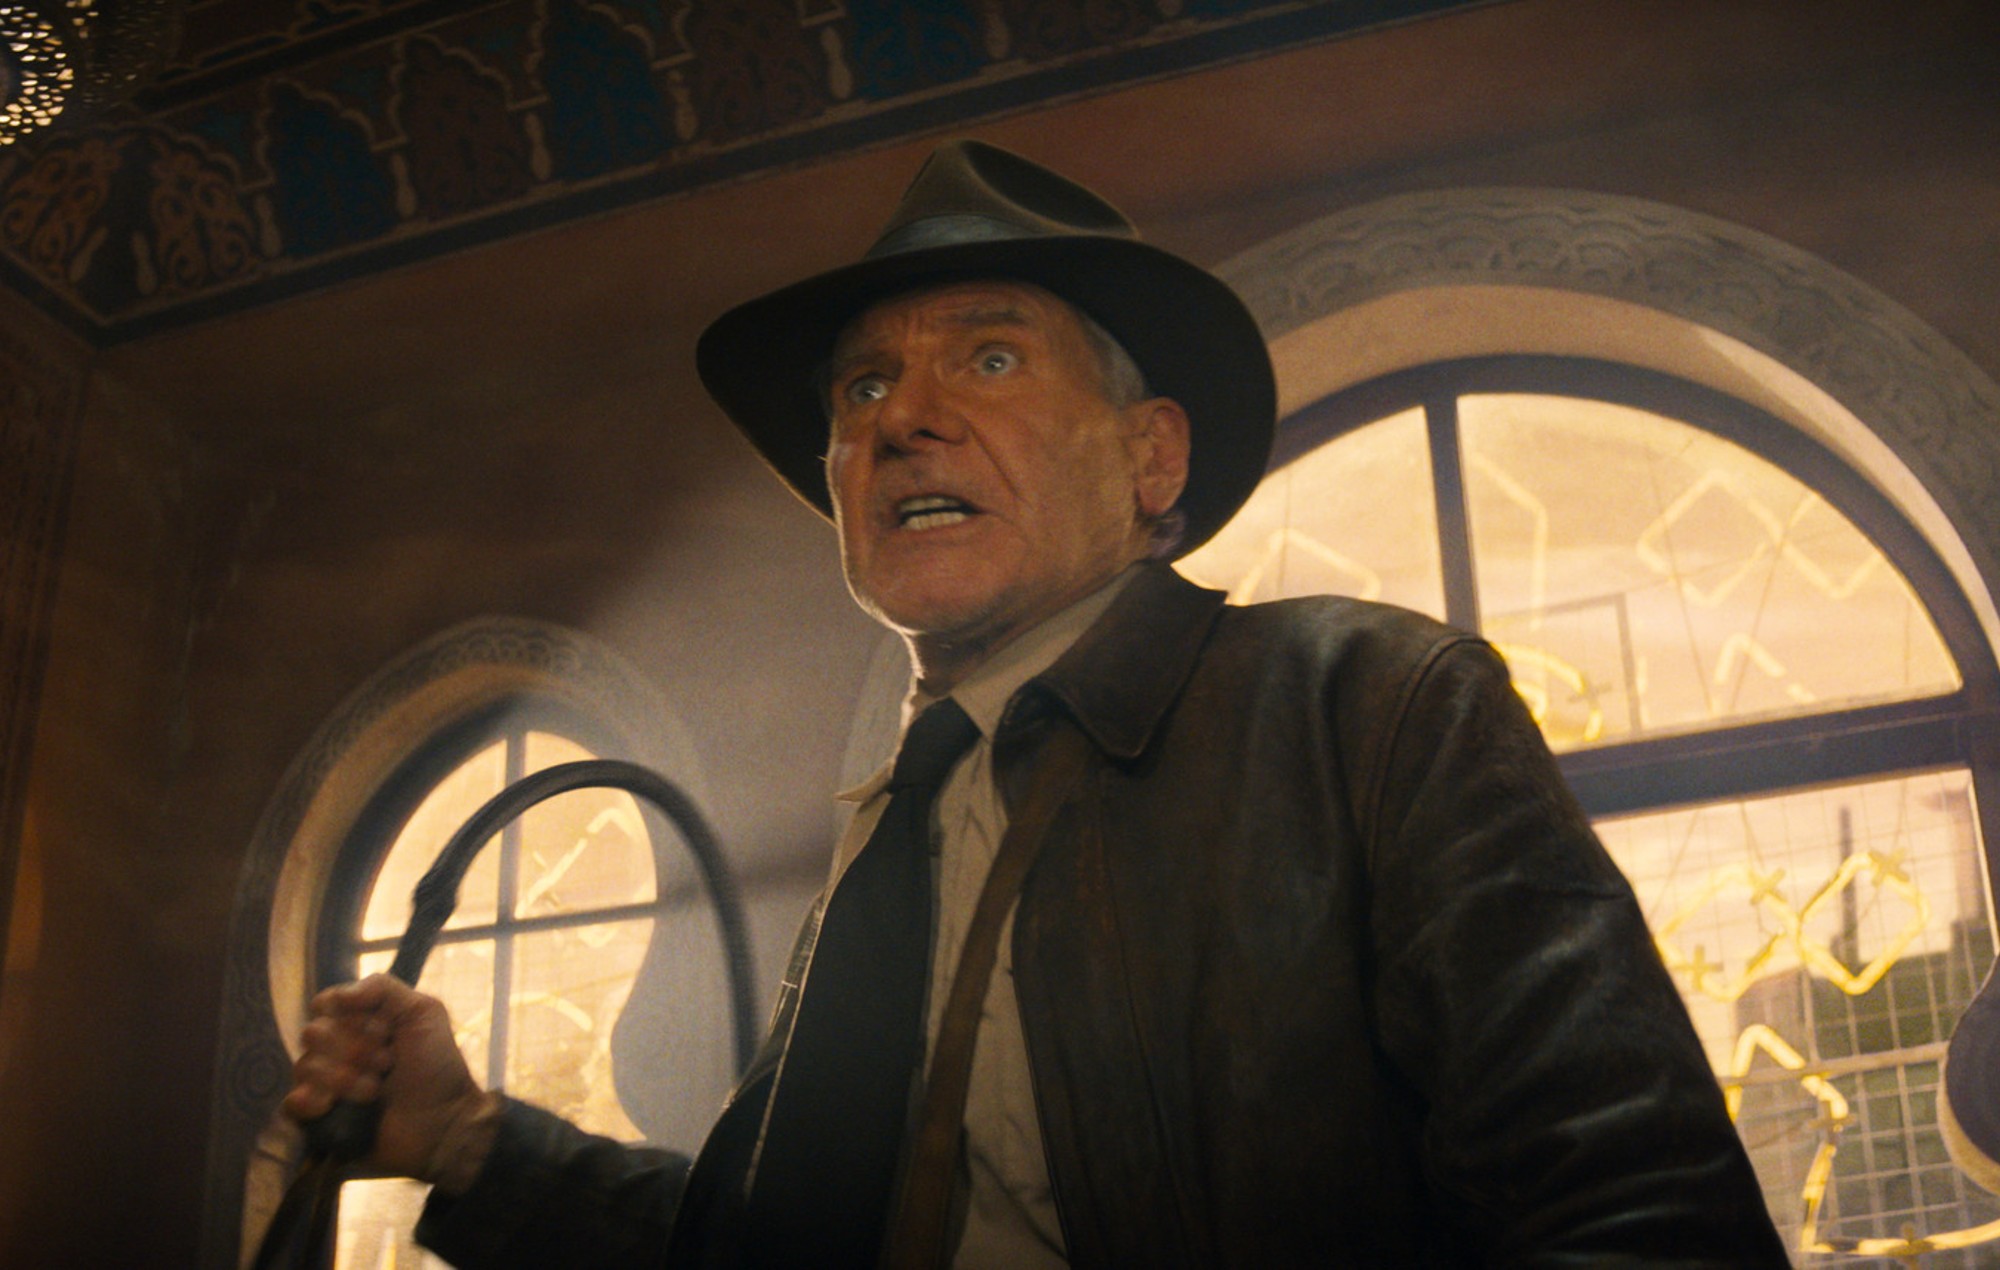 Indiana Jones sale de su retiro en el nuevo tráiler de "El dial del destino